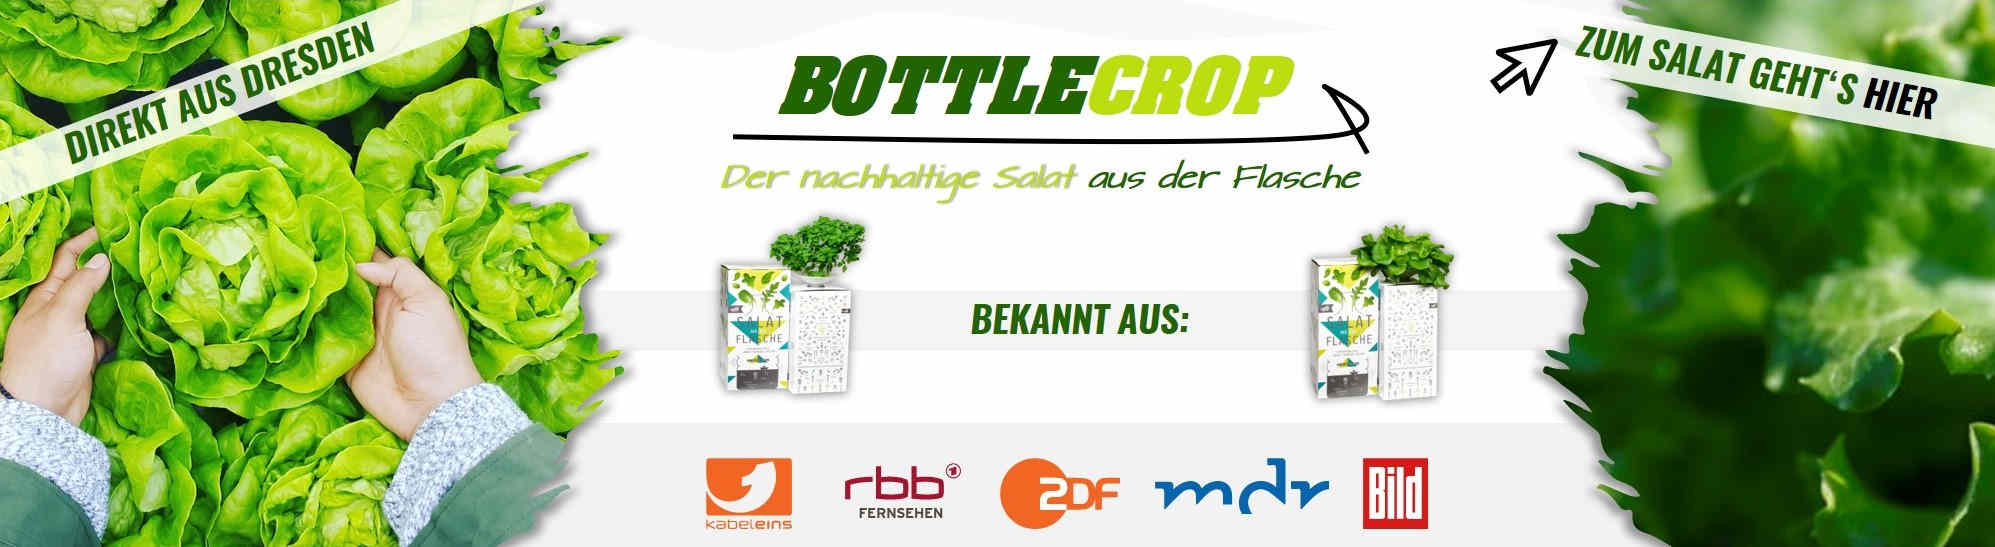 Bottlecrop Salat aus der Flasche online entdecken